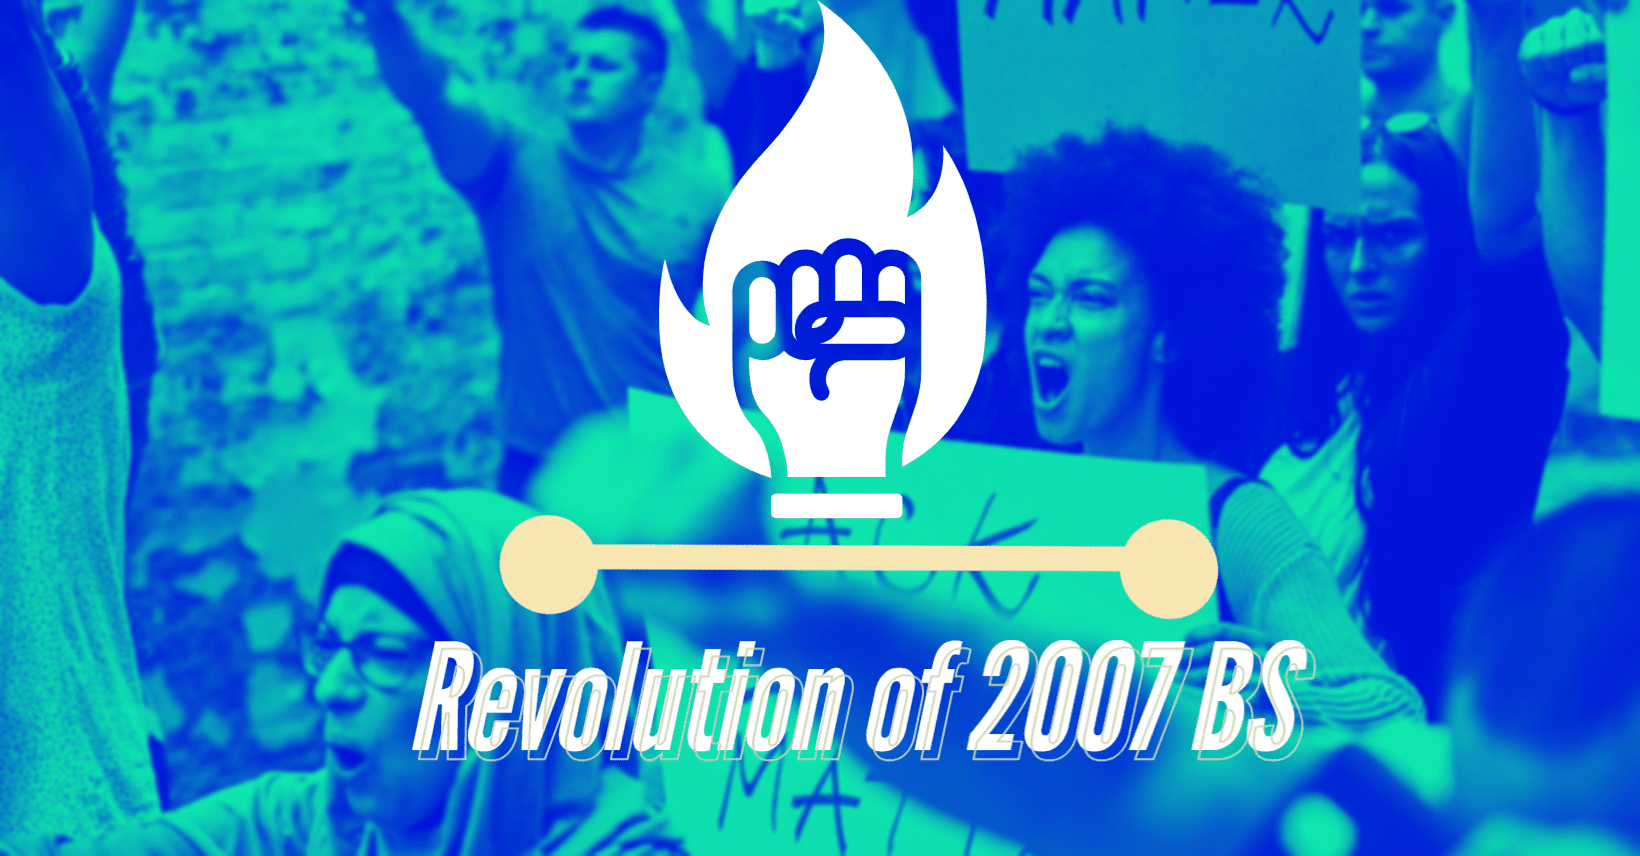 Revolution of 2007 BS